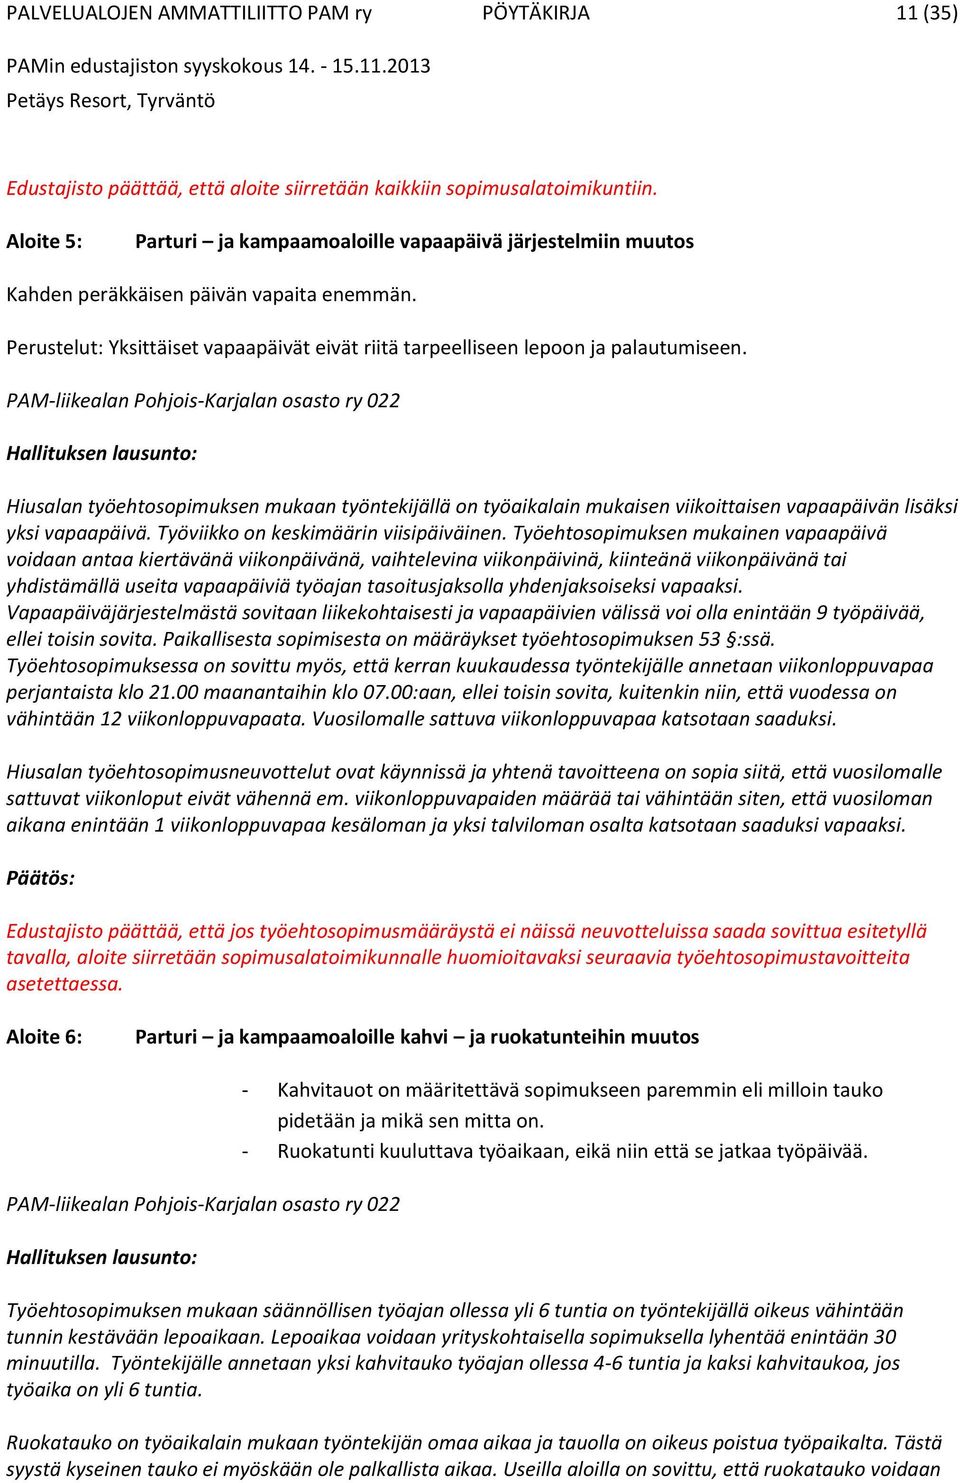 PAM-liikealan Pohjois-Karjalan osasto ry 022 Hallituksen lausunto: Hiusalan työehtosopimuksen mukaan työntekijällä on työaikalain mukaisen viikoittaisen vapaapäivän lisäksi yksi vapaapäivä.